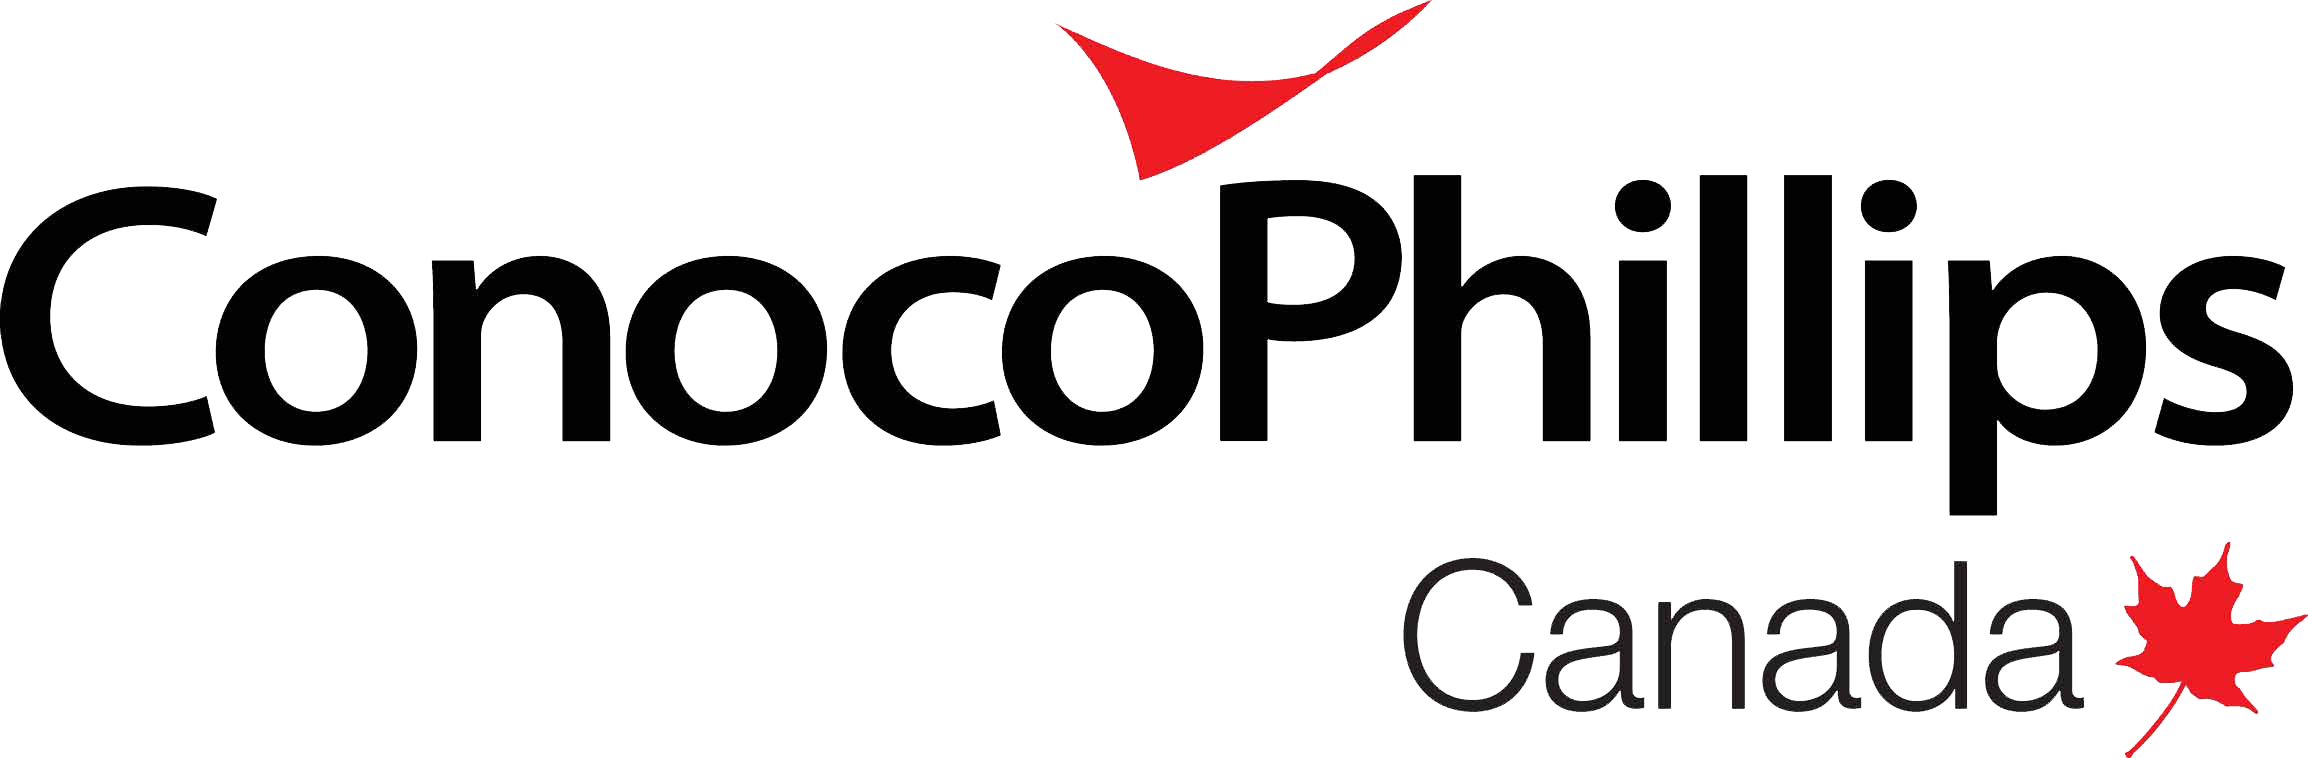 ConocoPhillips Canada